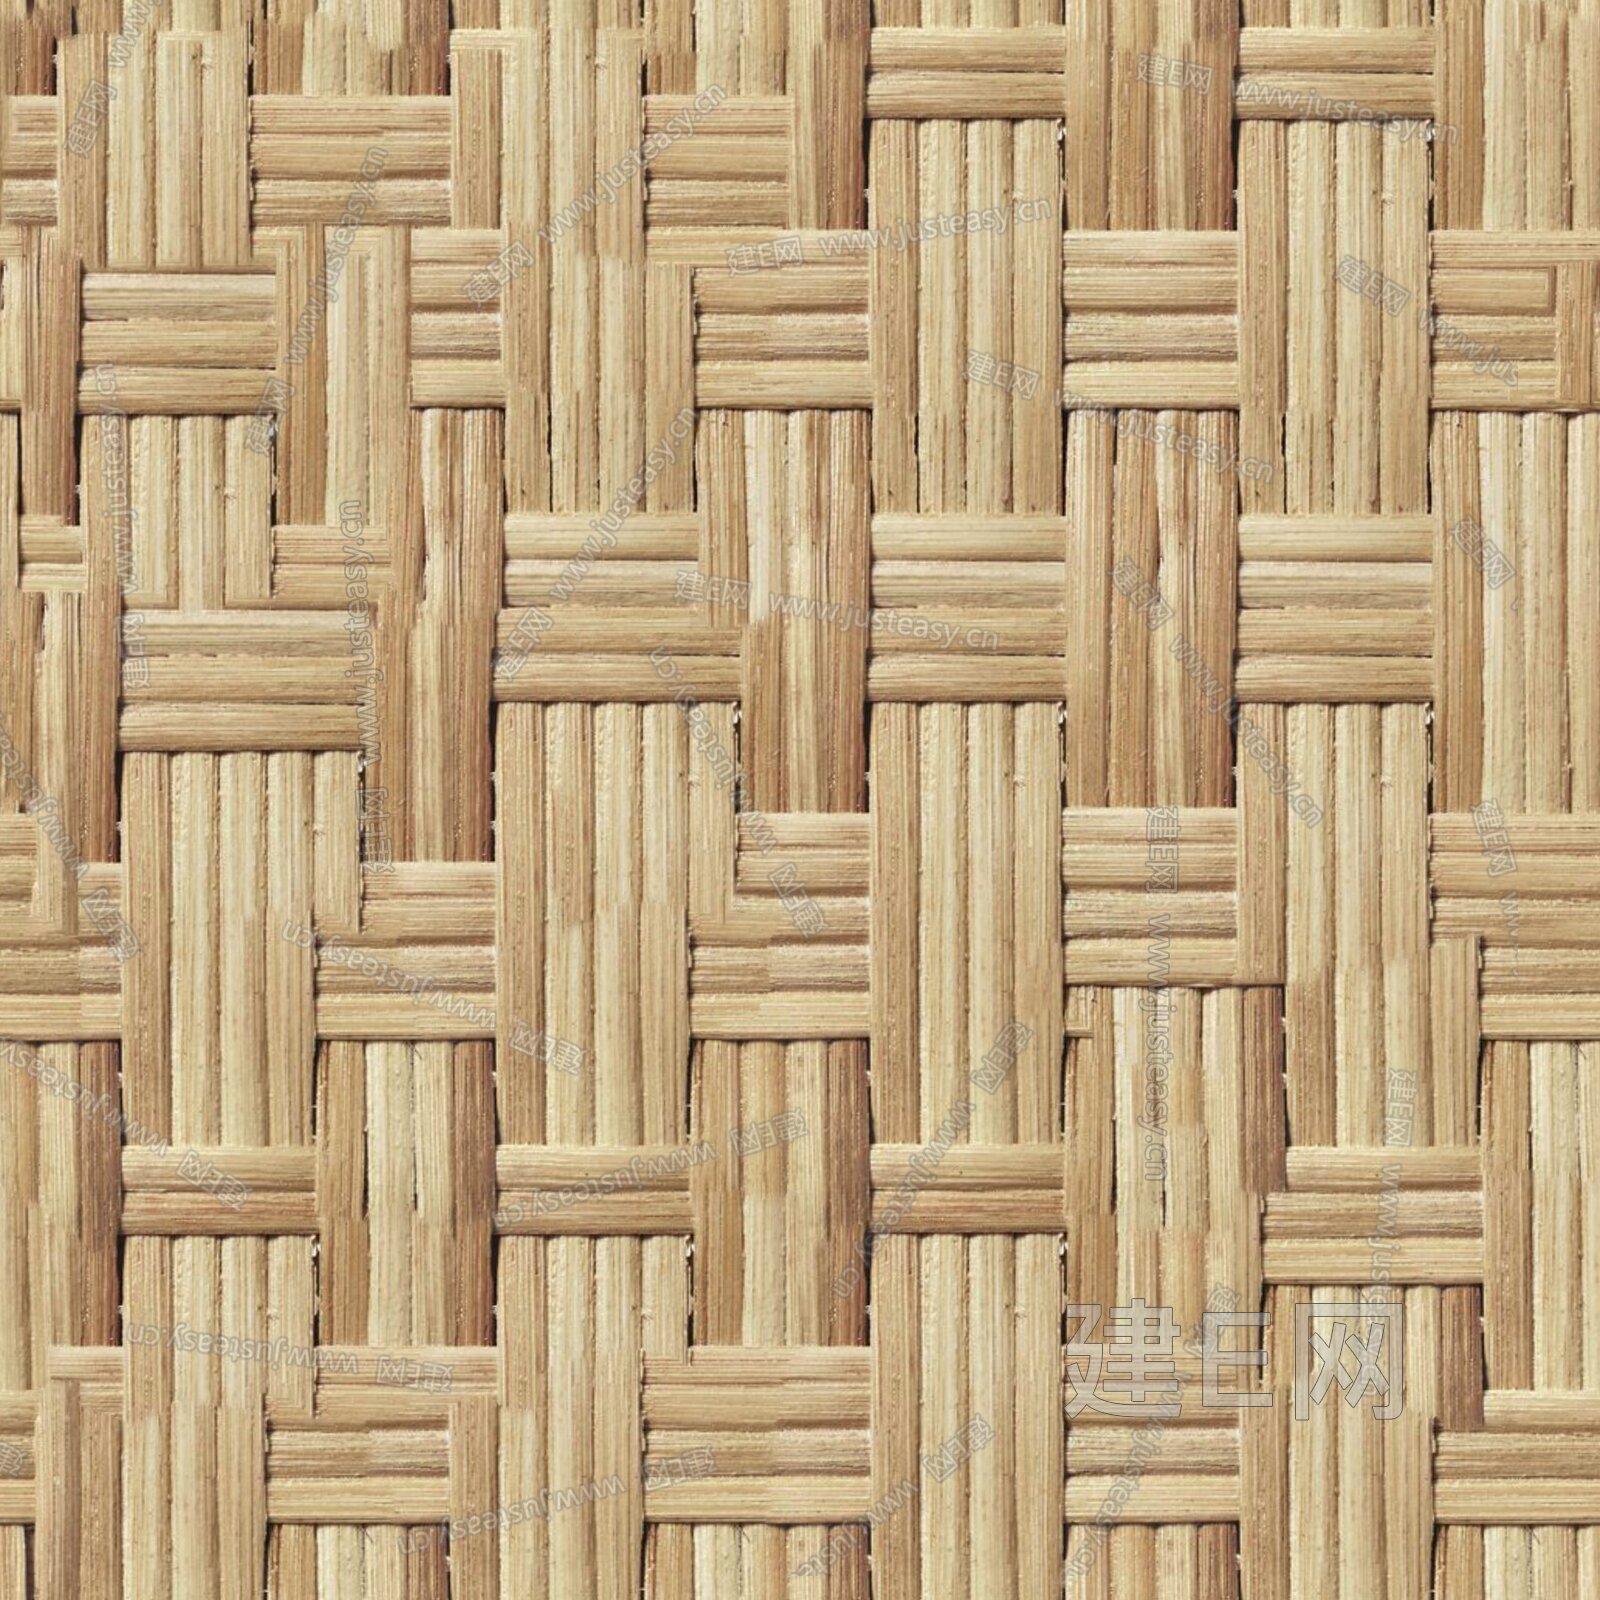 中式竹子竹林无缝壁纸图案多通道墙纸墙布下载-编号80616263-图案壁纸-中式壁纸-壁纸墙布-背景墙/壁纸-玖图网